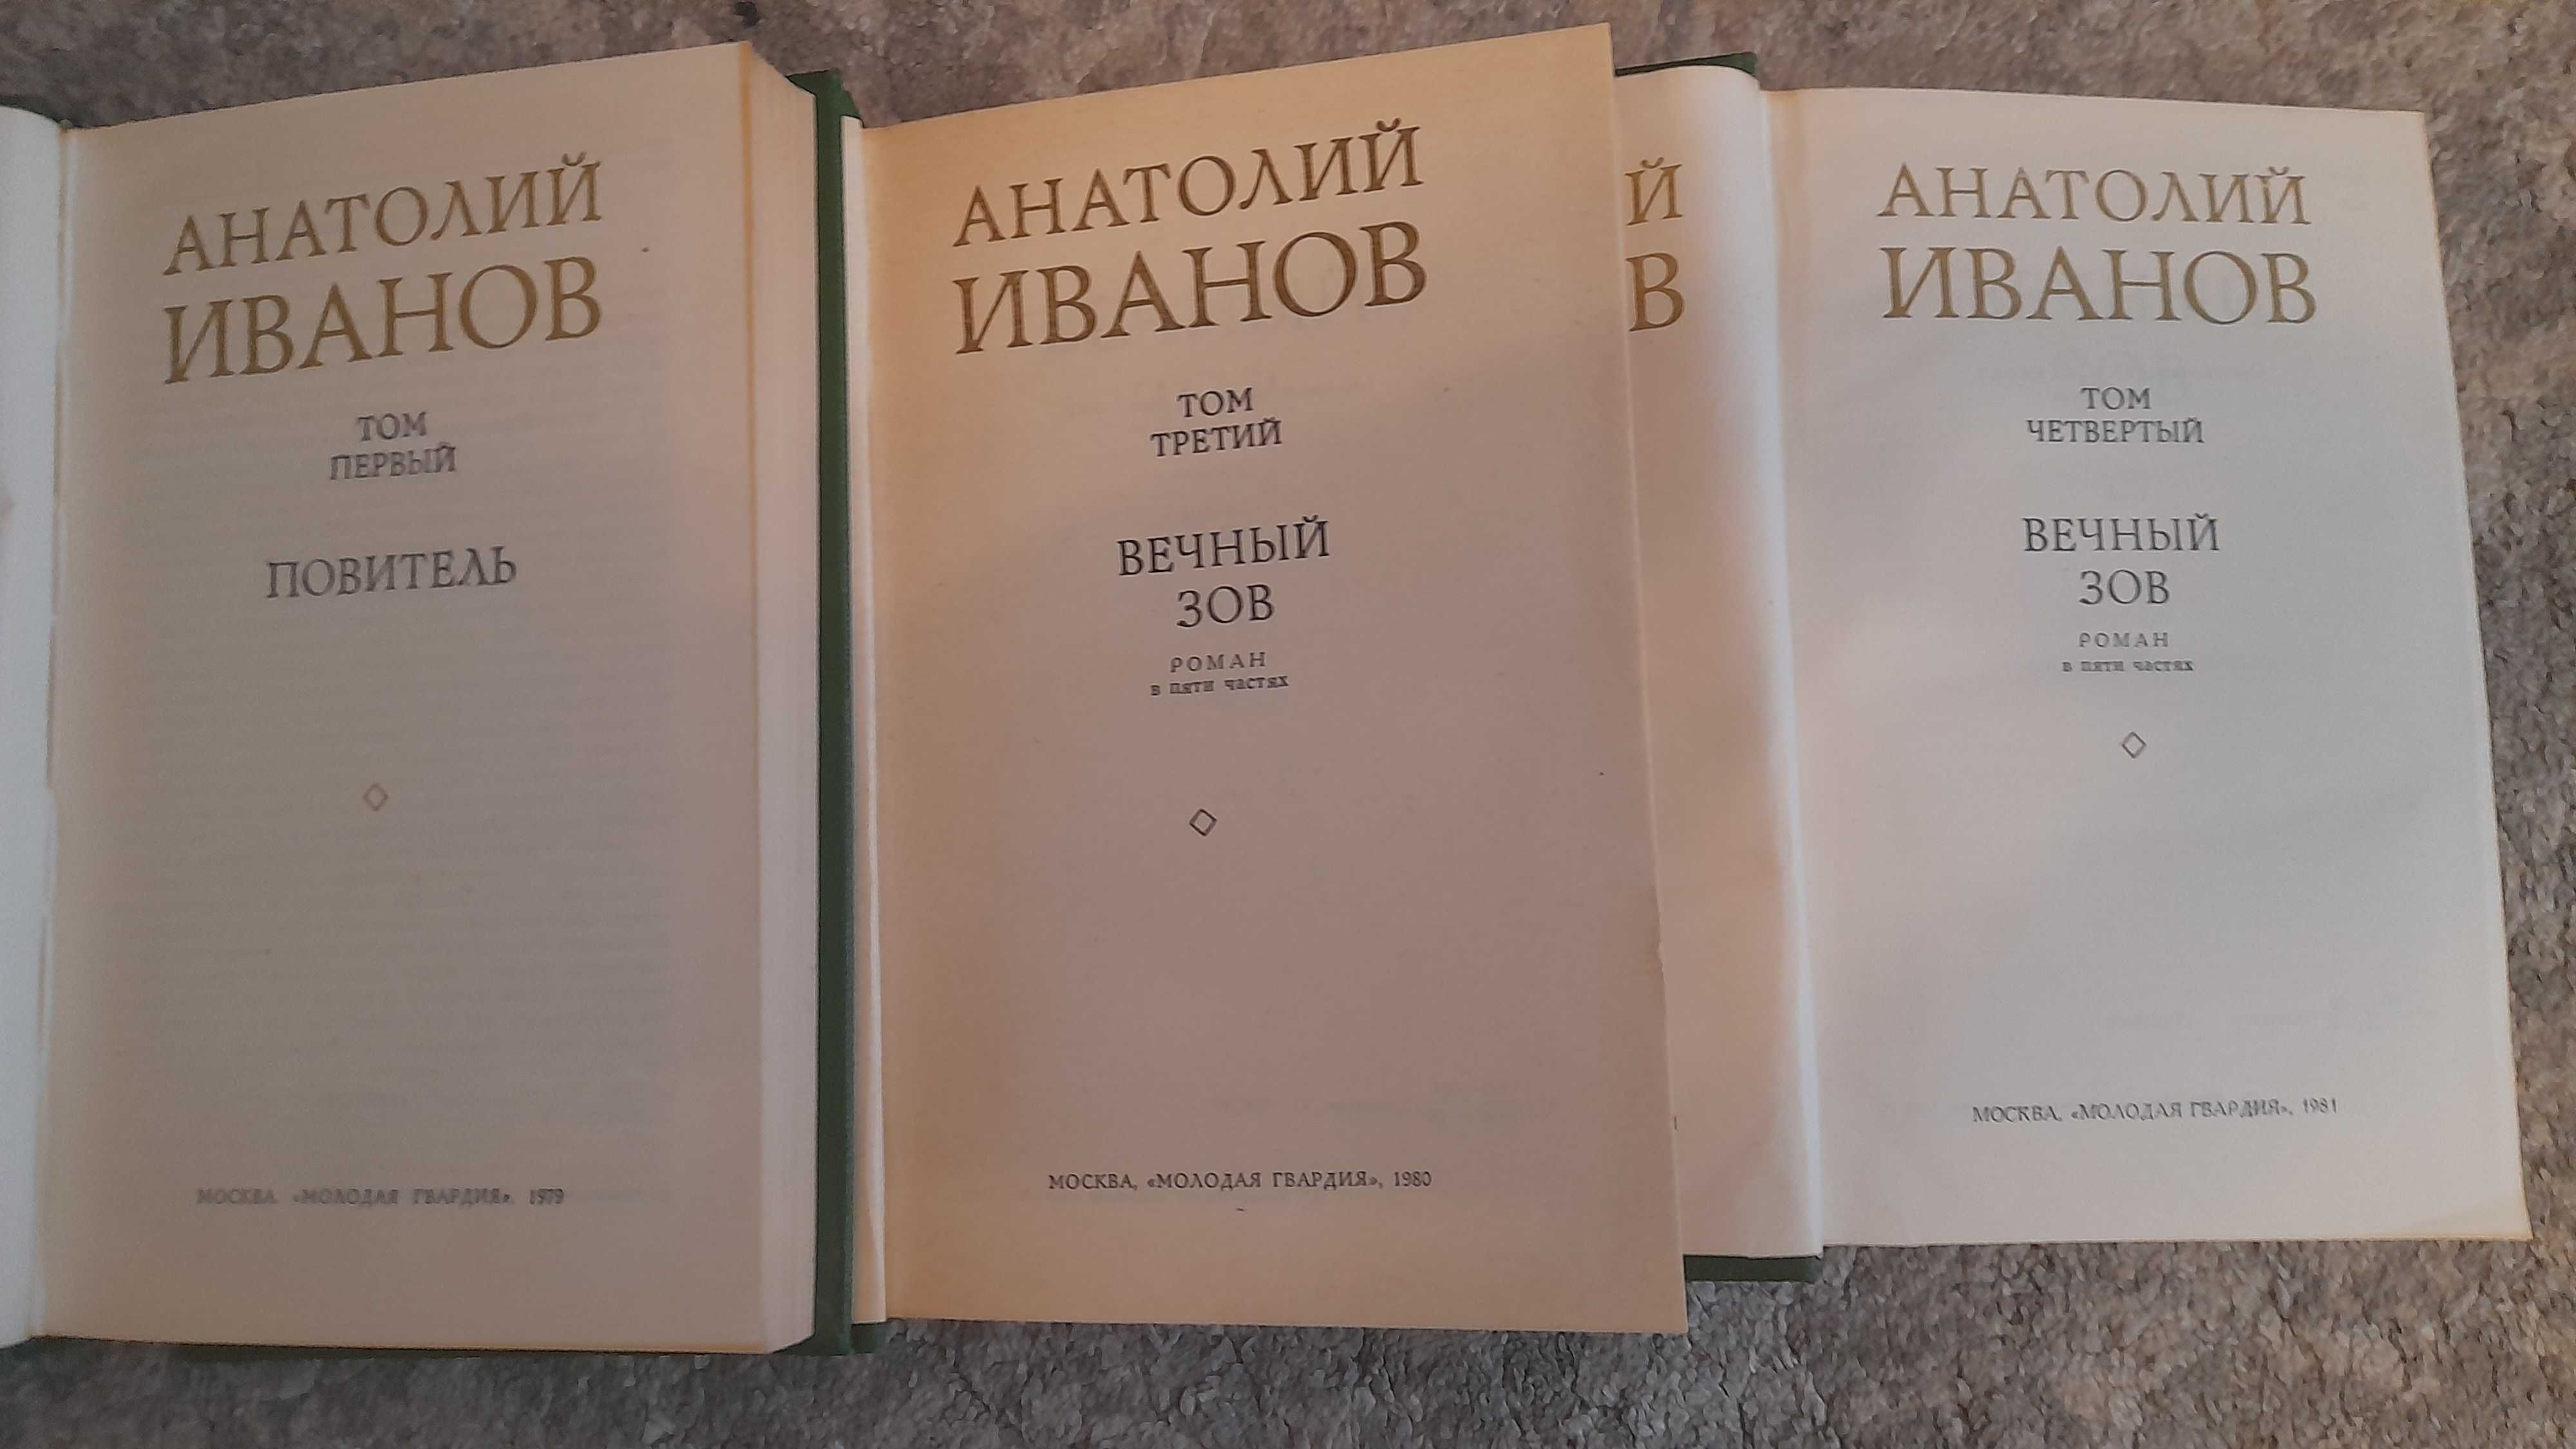 Иванов. А. Собрание сочинений в 5 т. (том 3, 4), 1979-1981